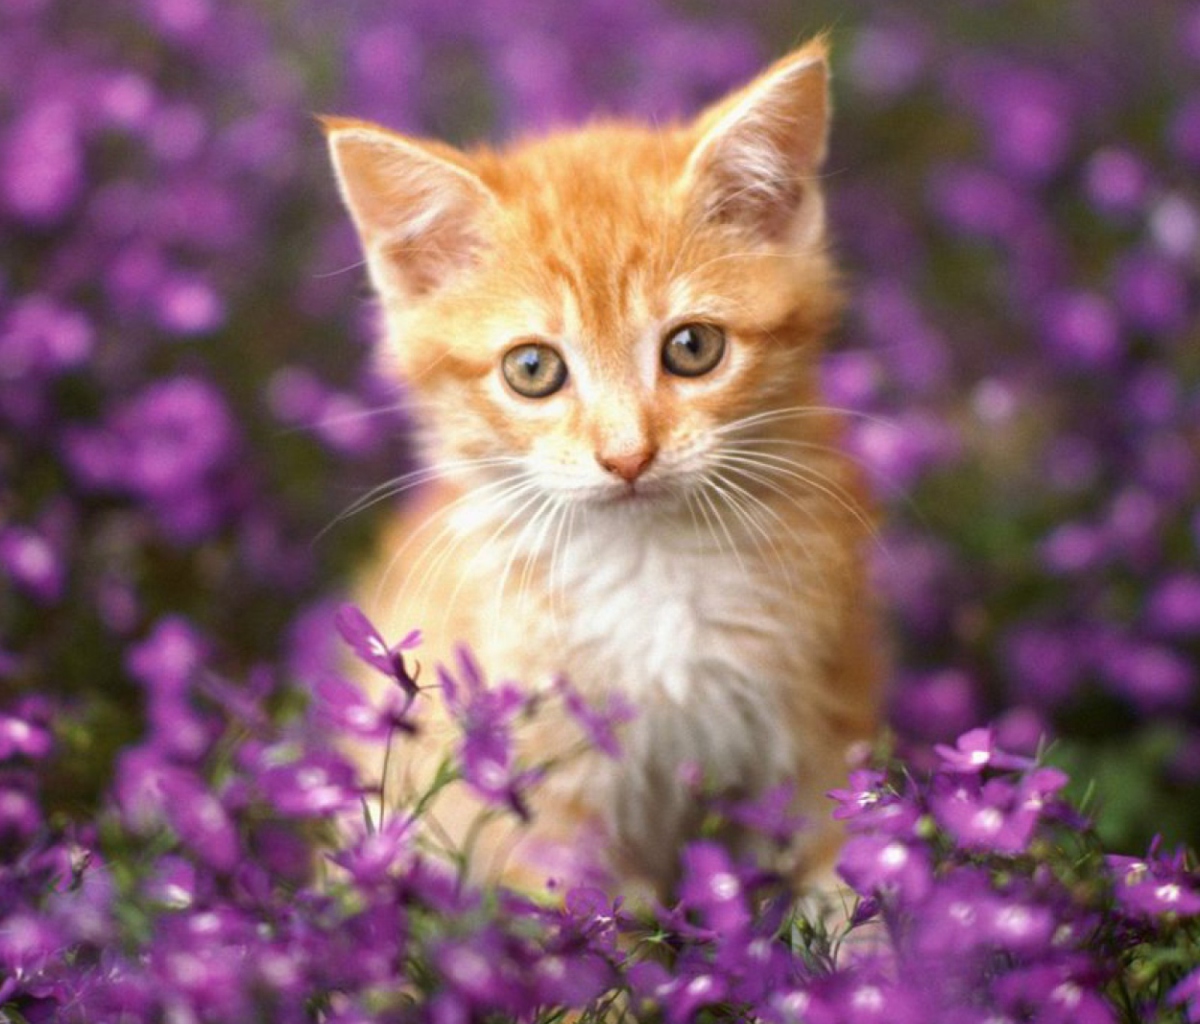 Sweet Kitten In Flower Field wallpaper 1200x1024